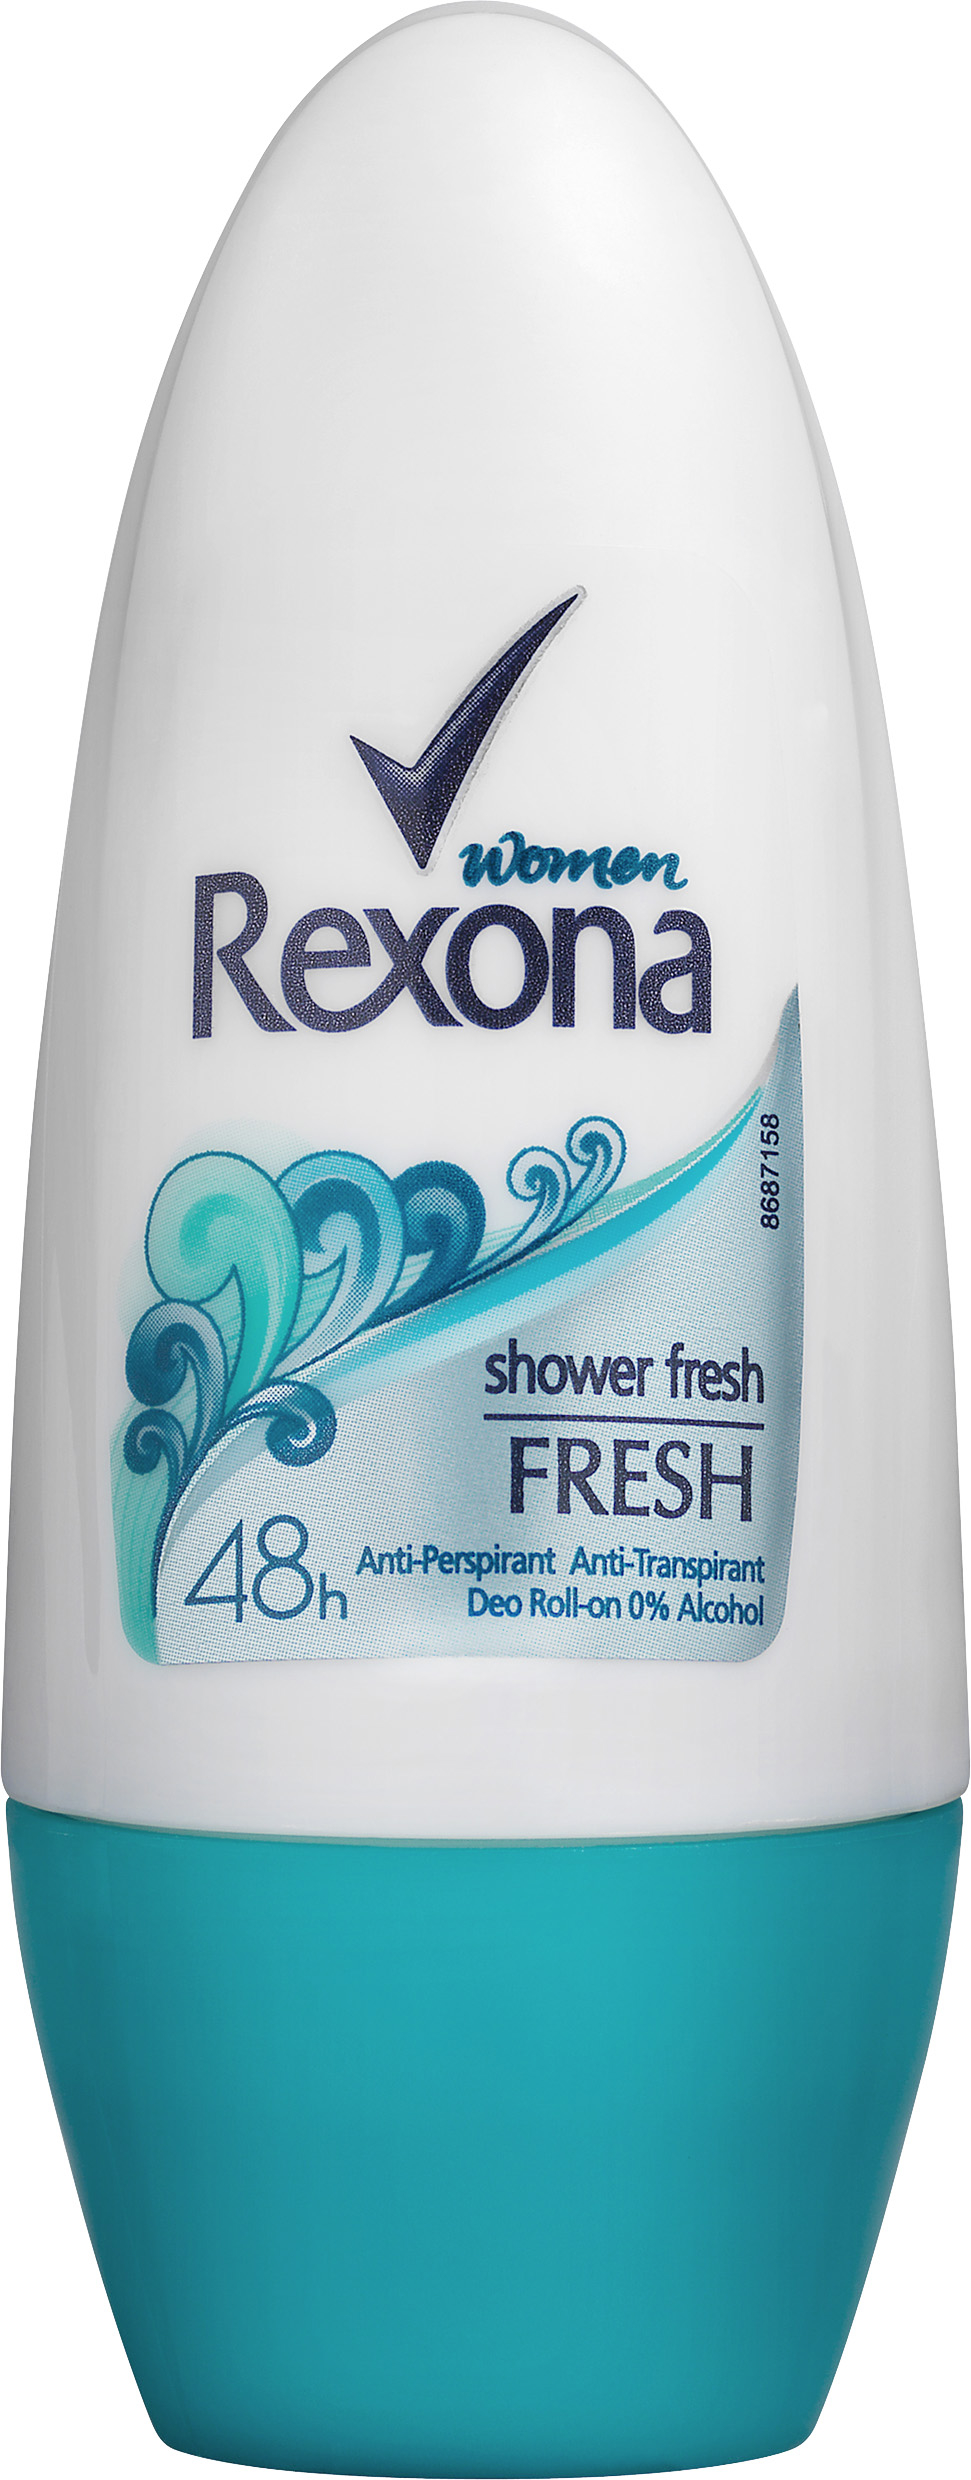 Rexona Roll-on shower fresh 50 mm